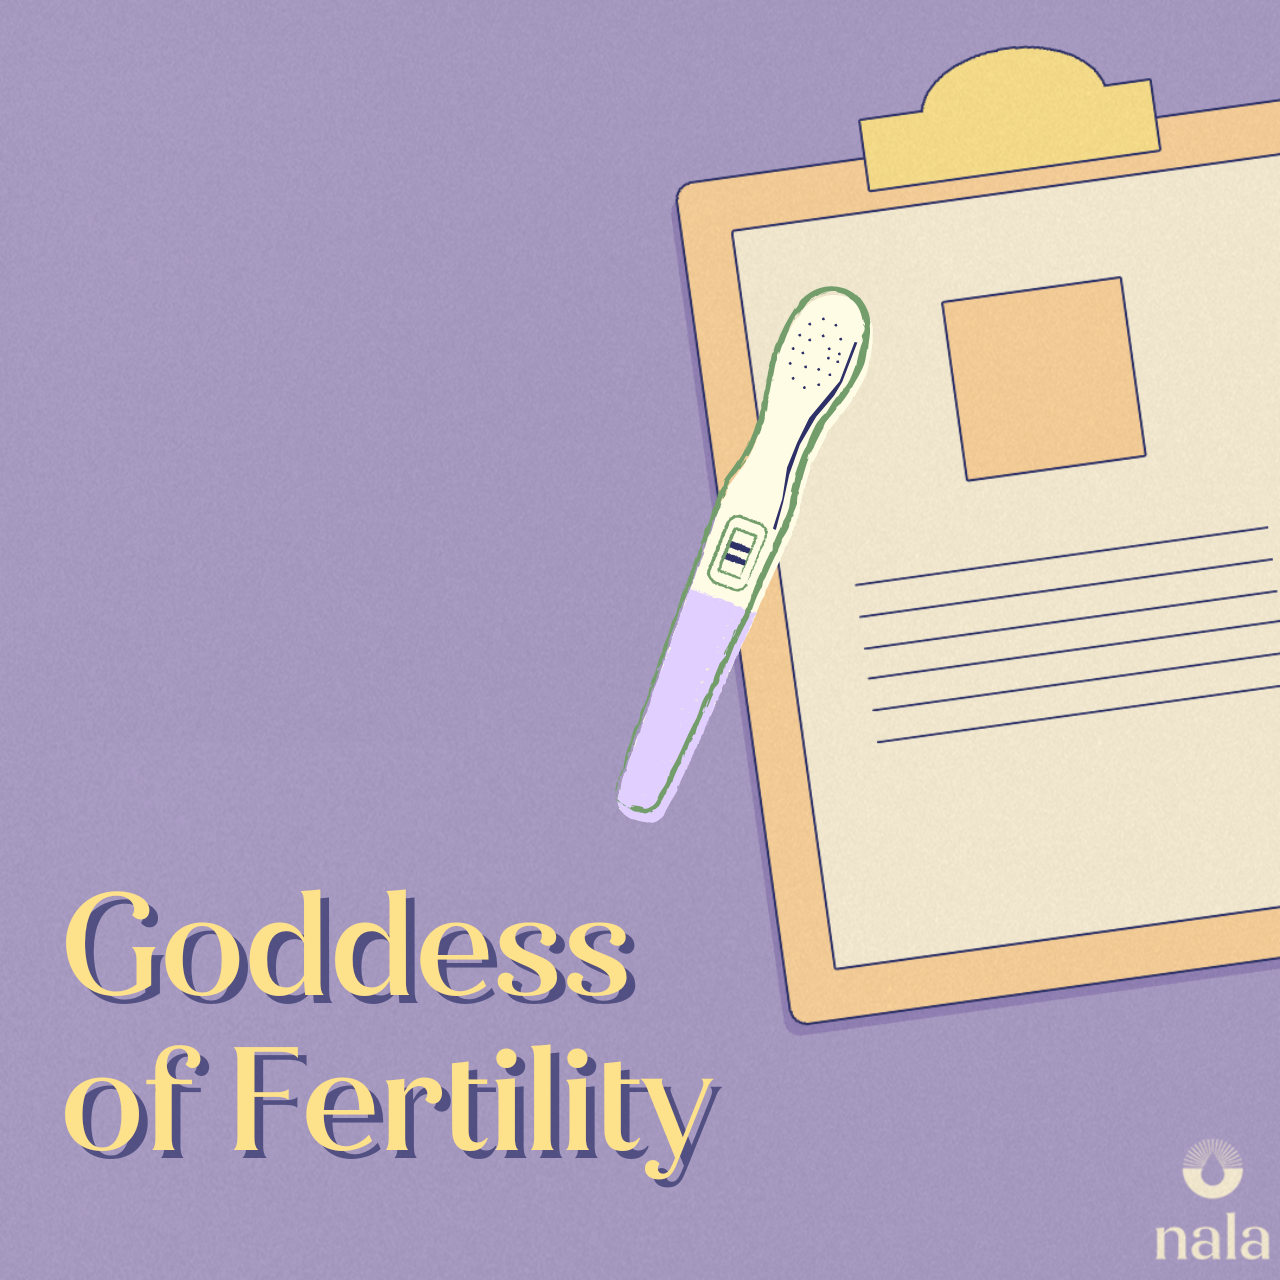 Goddess of Fertility 👶